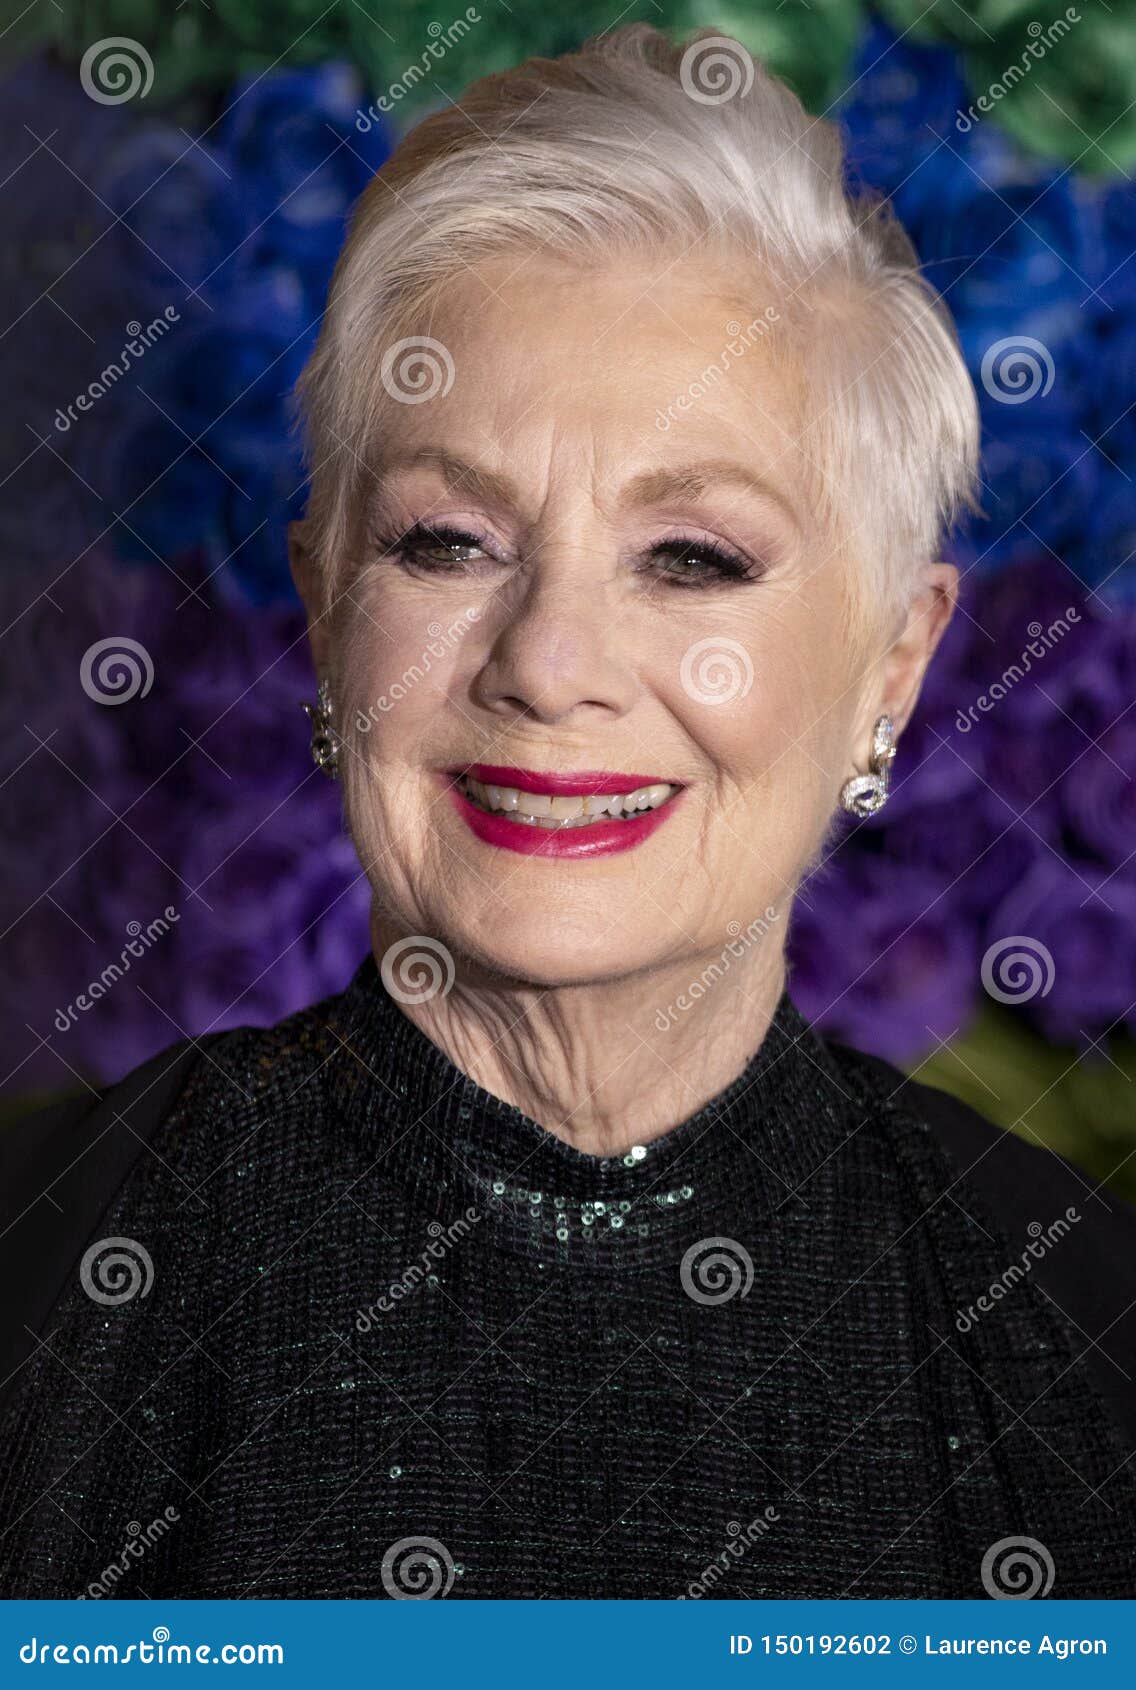 Shirley Jones At The 2019 Tony Awards Editorial Photography ...